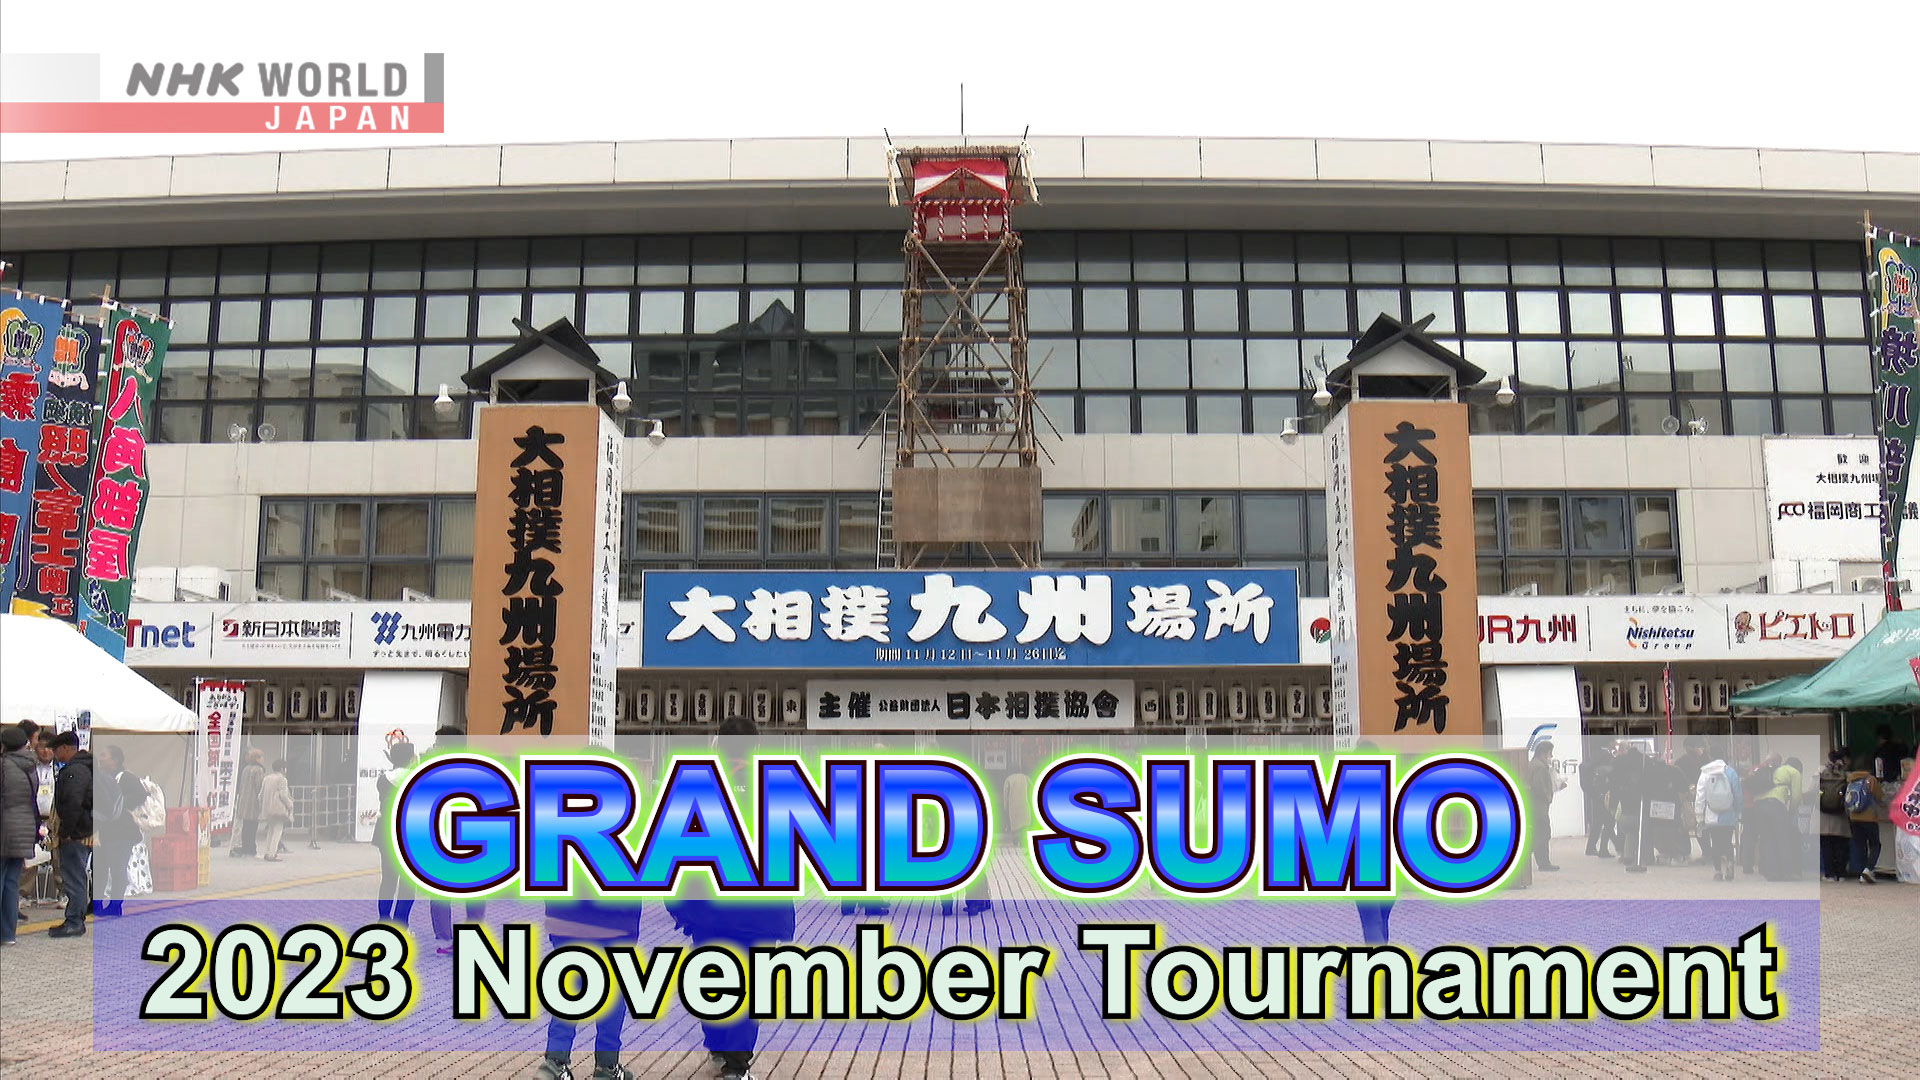 November Tournament